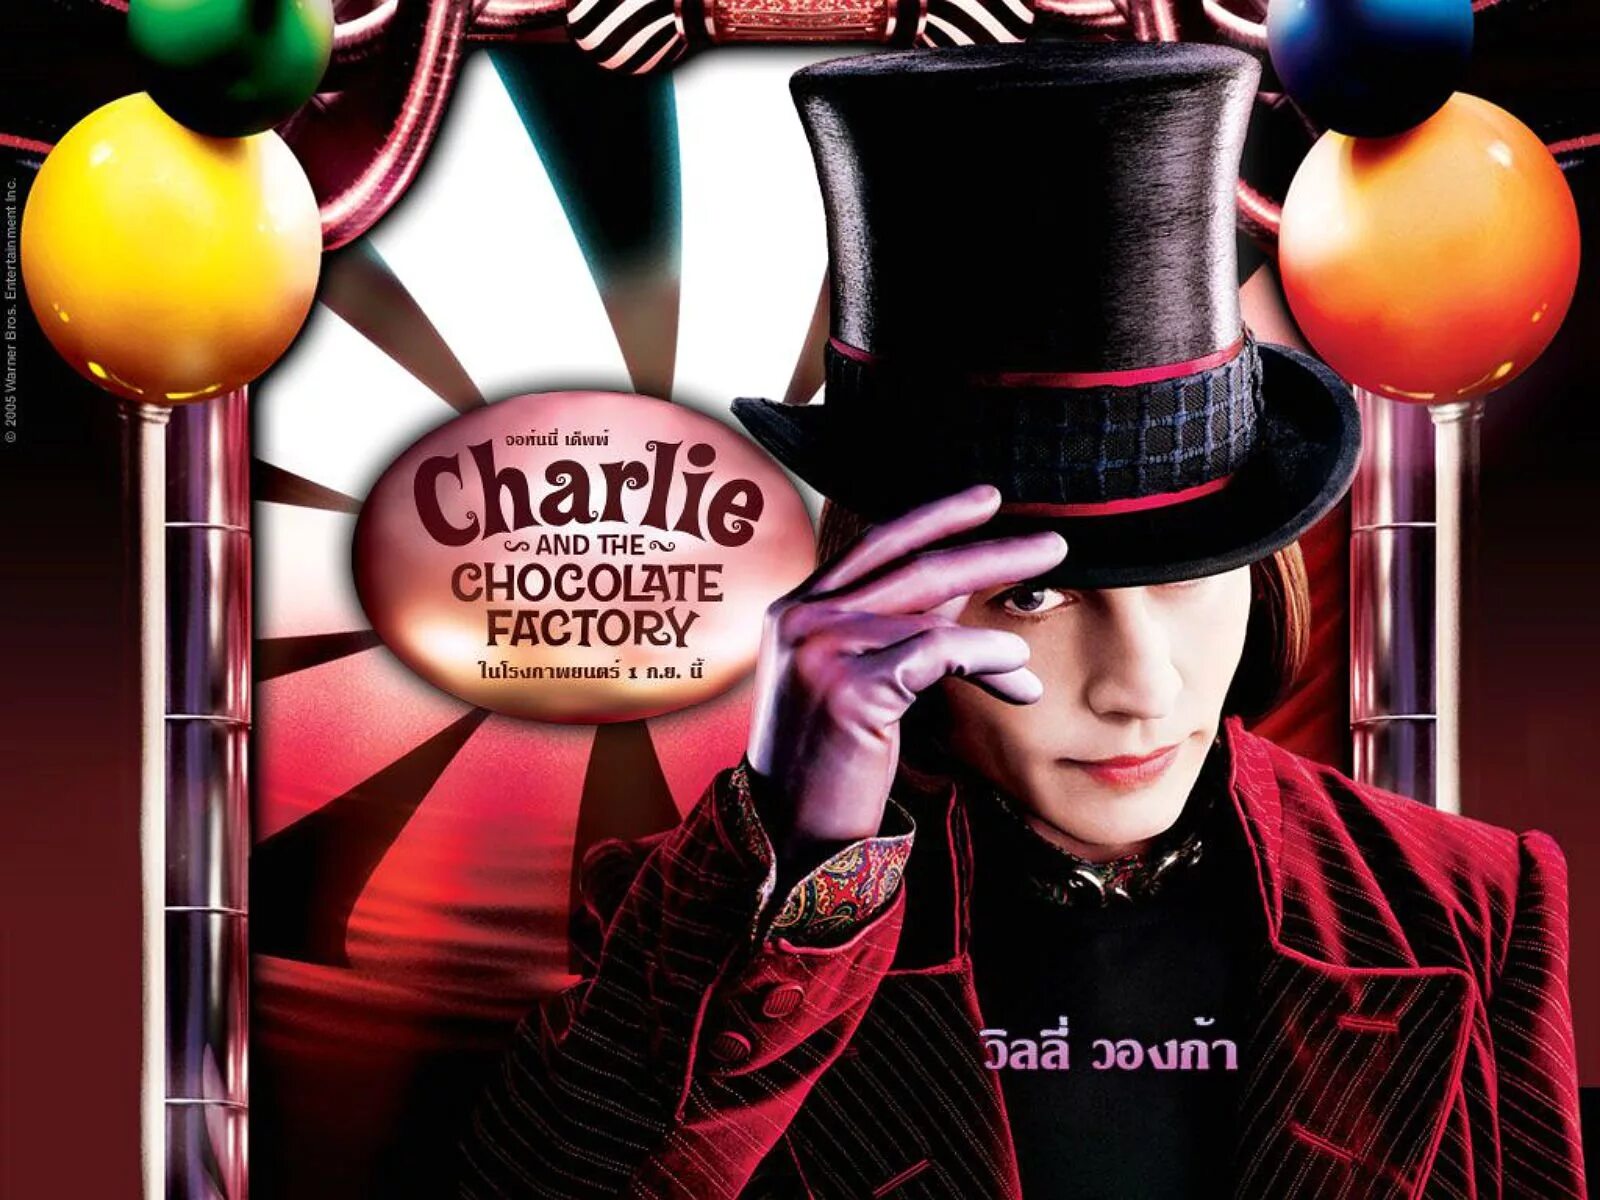 Шоколадная фабрика автор. Джонни Депп Чарли и шоколадная фабрика. Чарли и шоколадная фабрика / Charlie and the Chocolate Factory (2005).